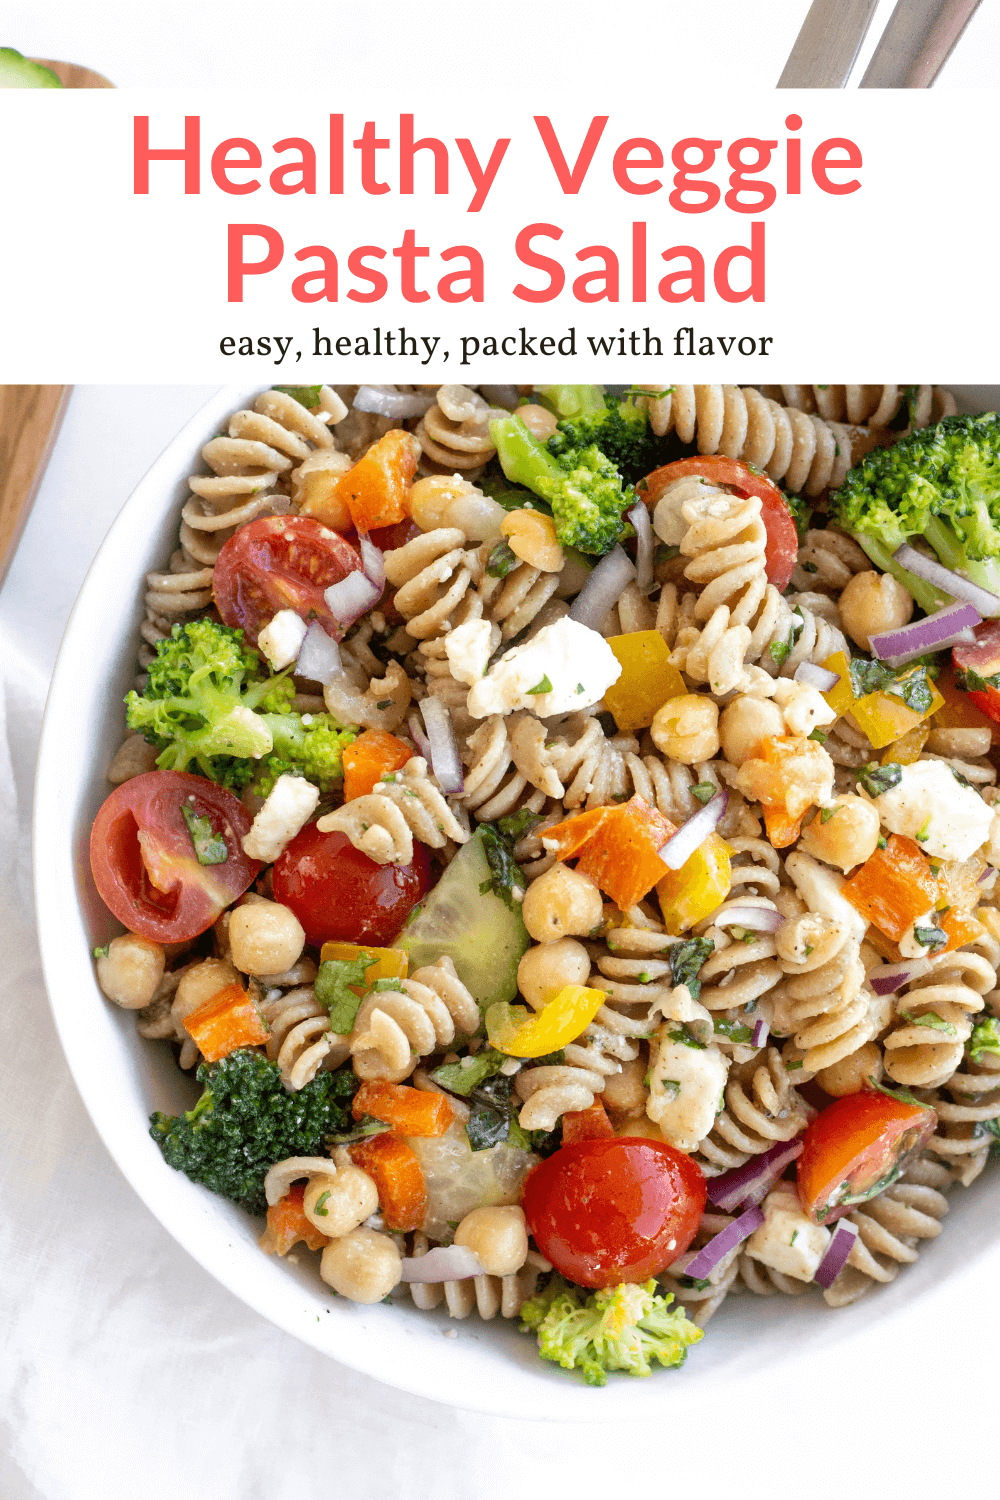 Easy Vegetable Pasta Salad - Slender Kitchen